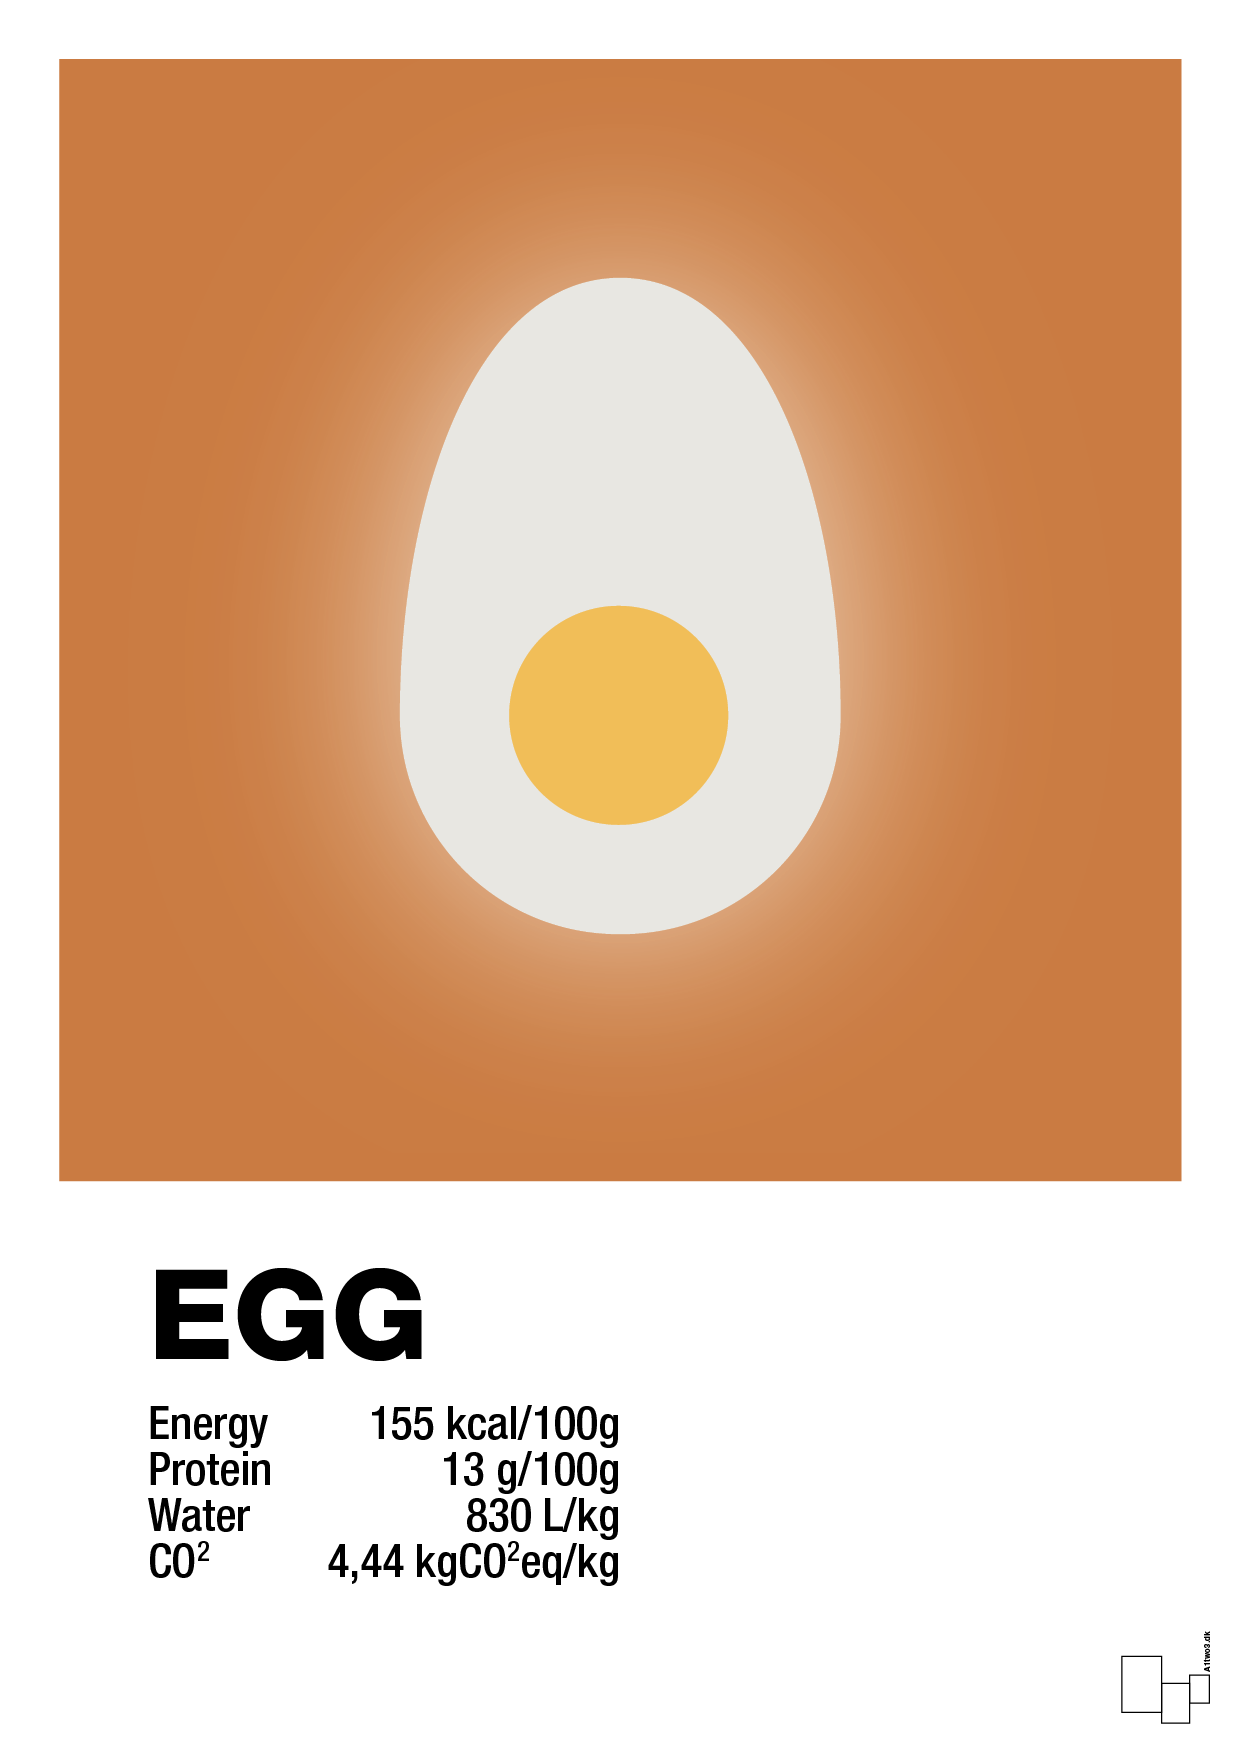 egg nutrition og miljø - Plakat med Mad & Drikke i Rumba Orange